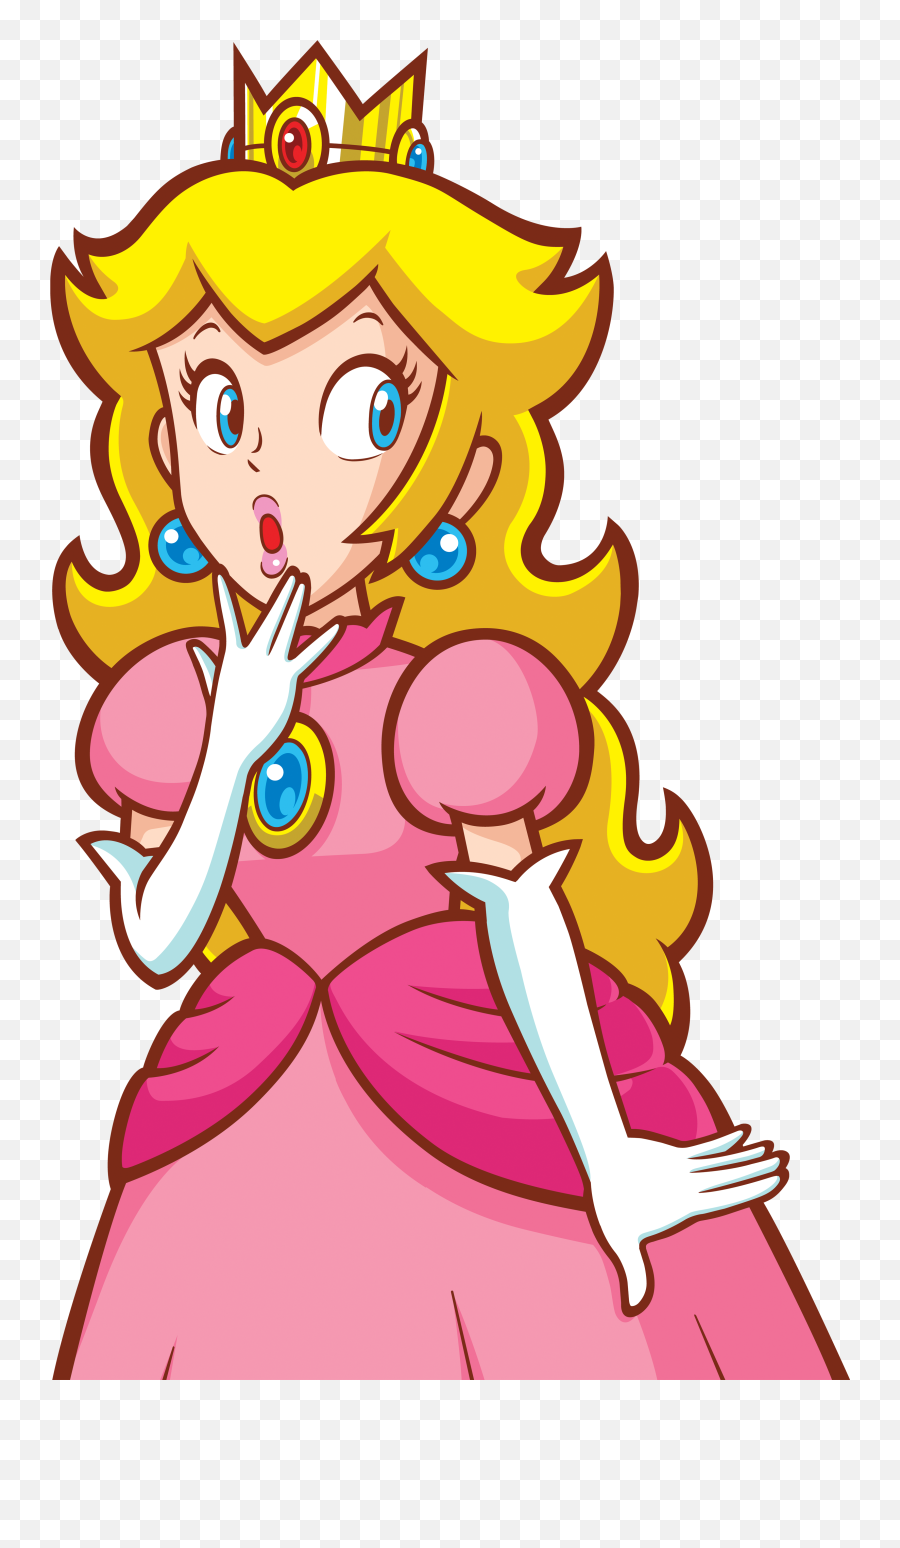 Mario Bros - Super Princess Peach Png,Princess Peach Transparent